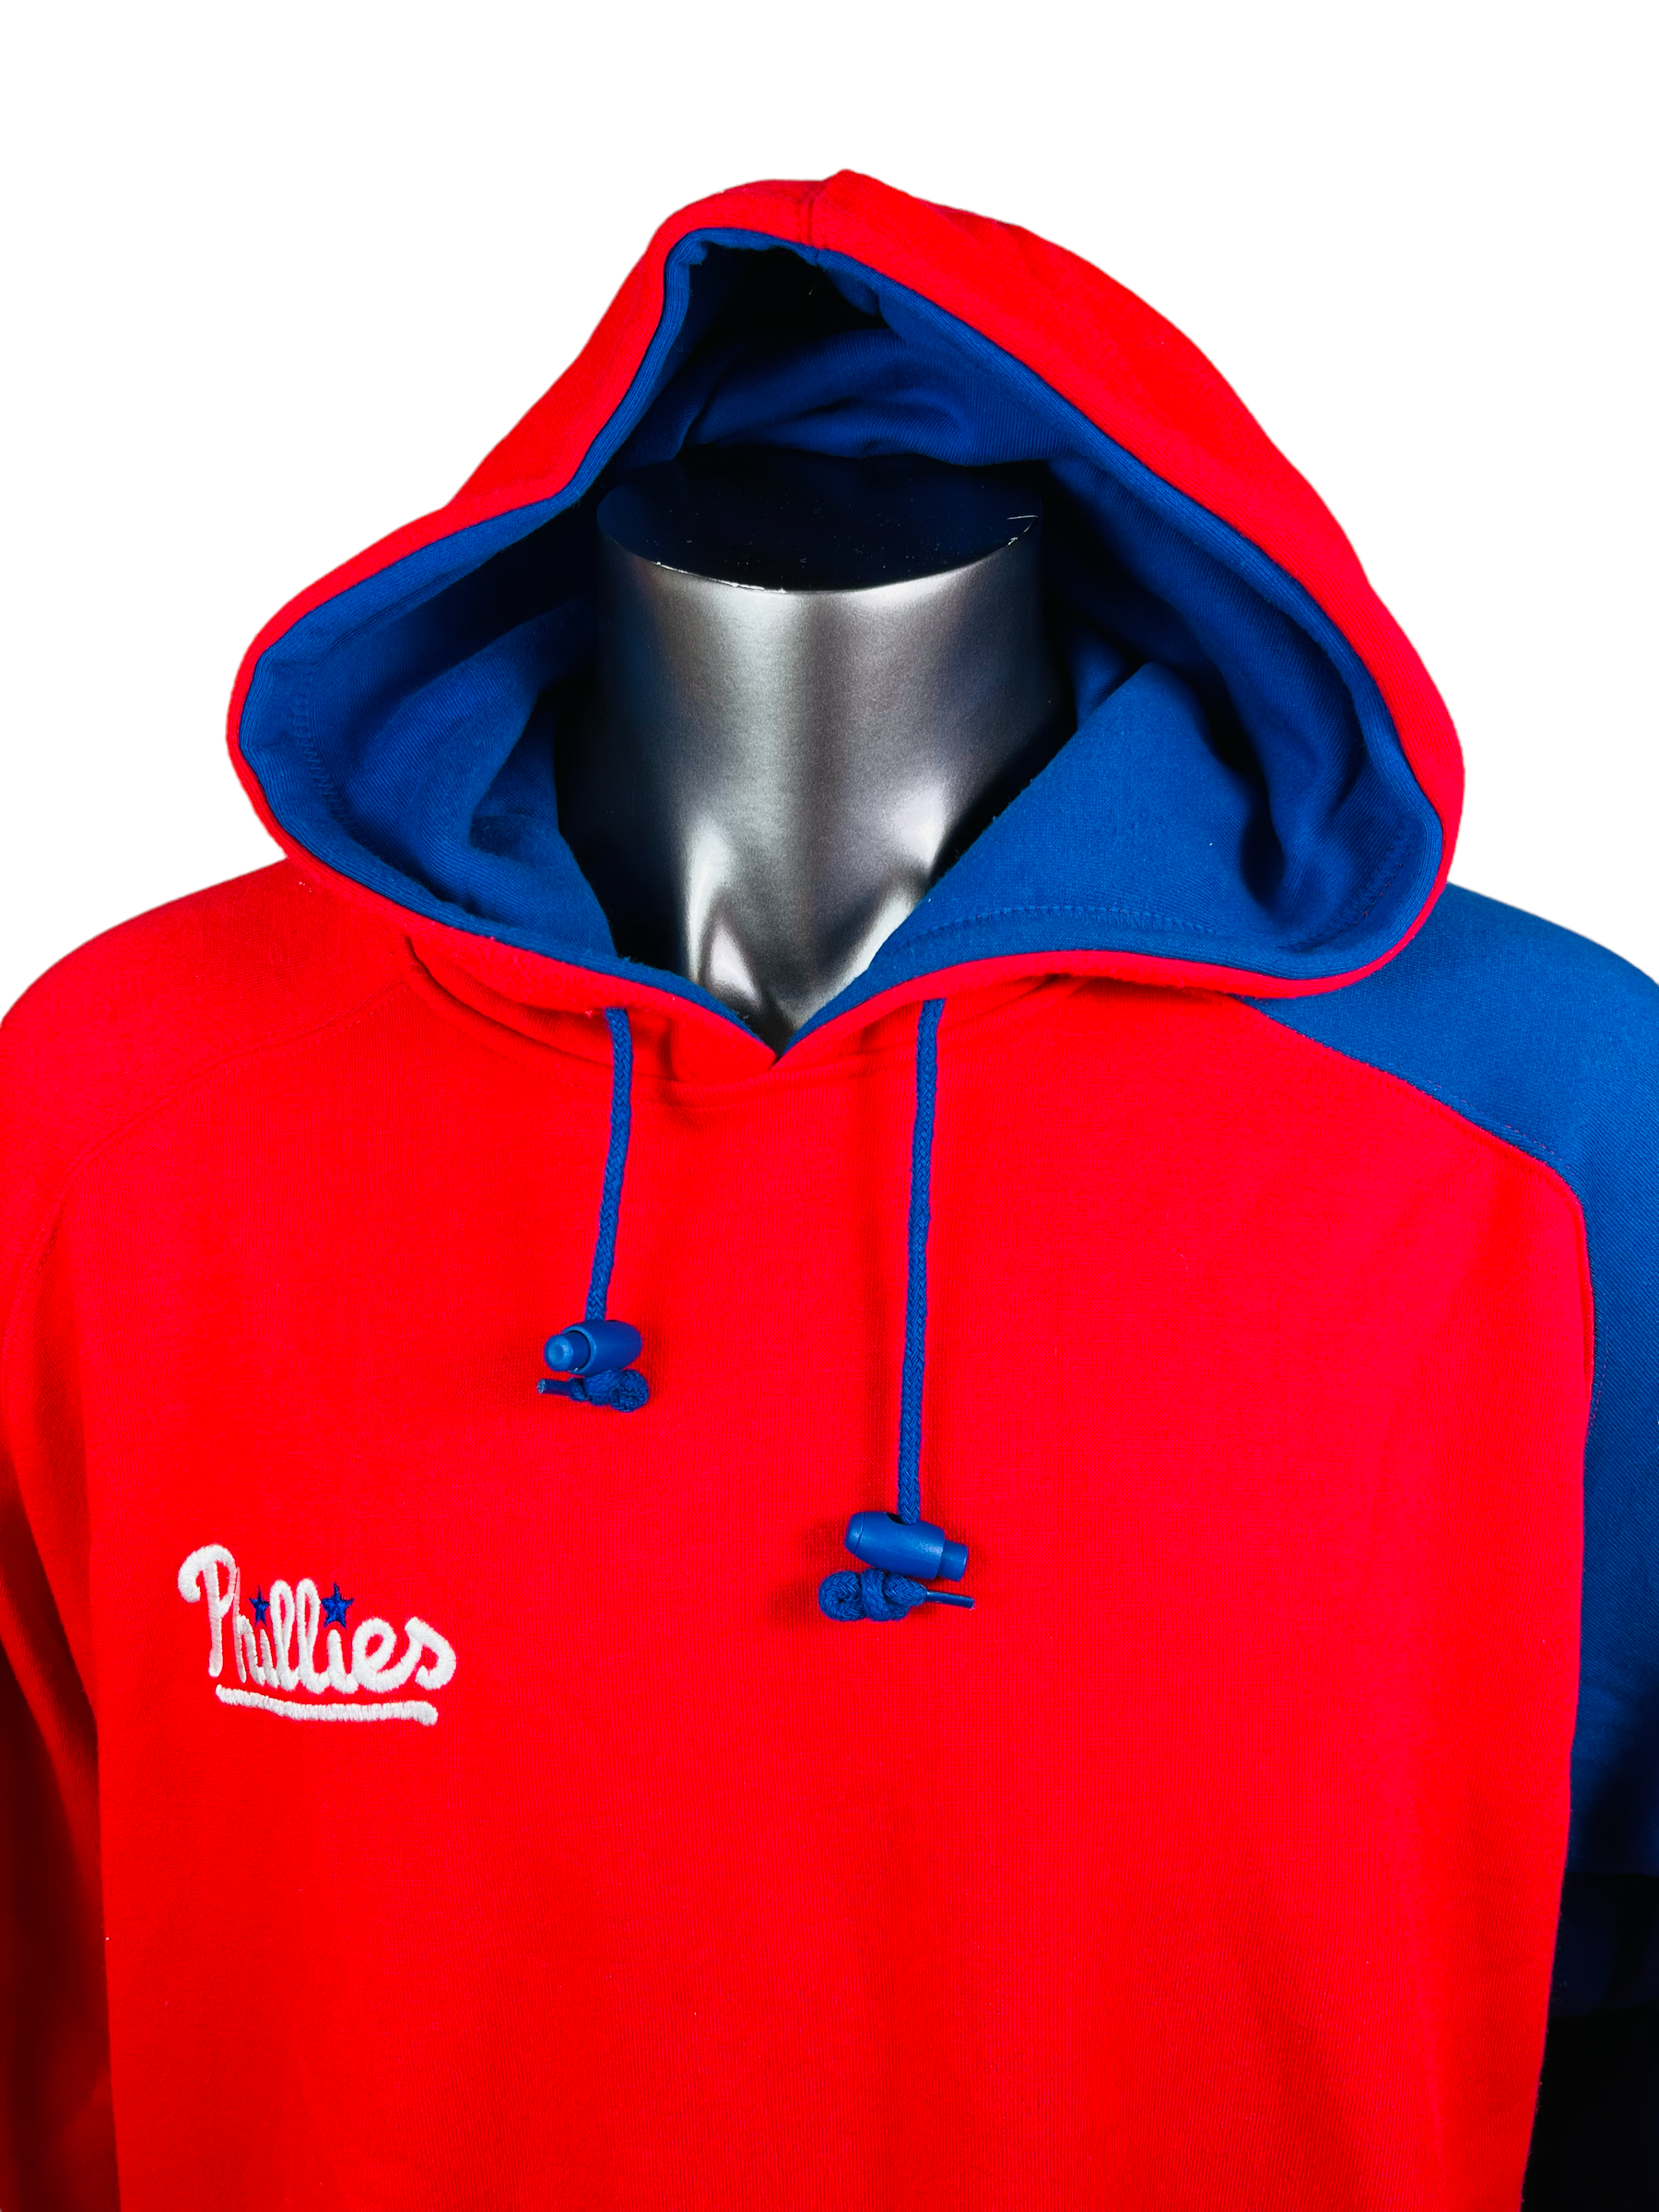 Philadelphia Phillies Baseball Team vintage shirt, hoodie